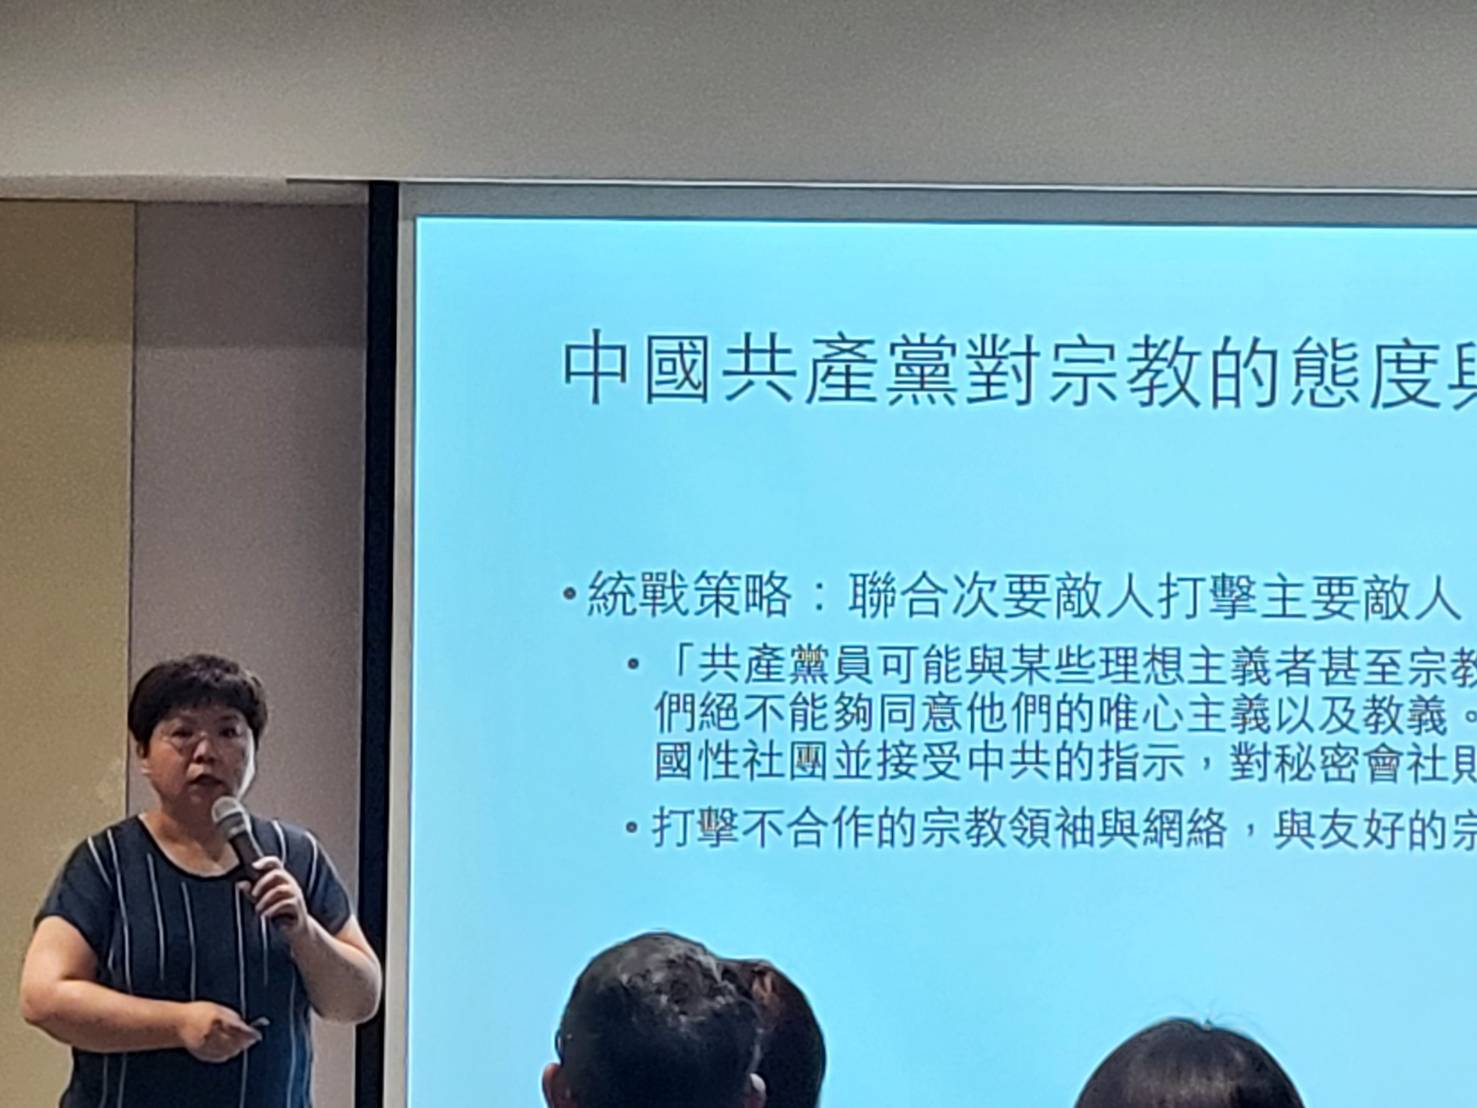 清華大學社會學研究所副教授古明君以「中共對台灣宮廟統戰工作的現況」為主題發表演說。